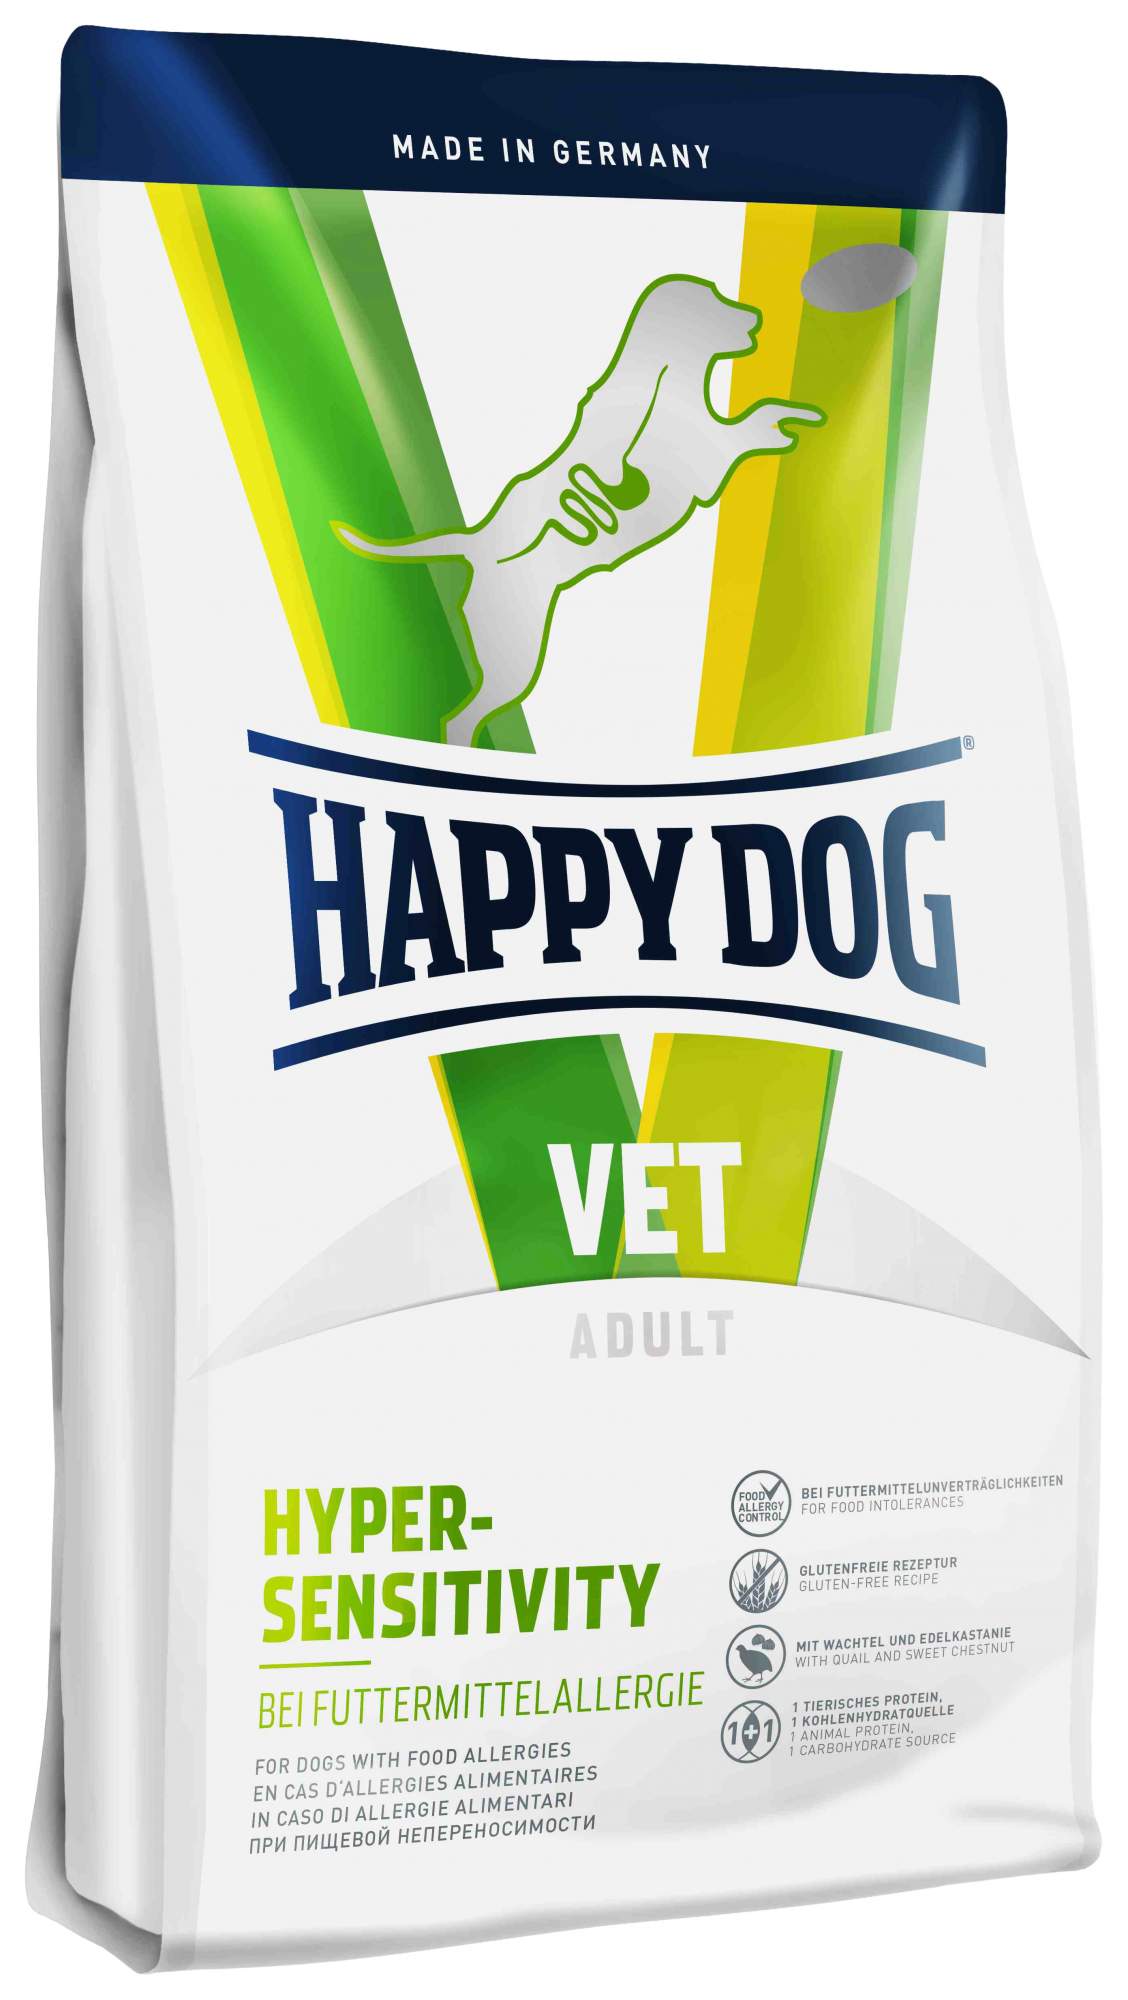 Сухой корм для собак Happy Dog Vet Adult Hyper-Sensitivity, при аллергии, мясо, 12,5кг